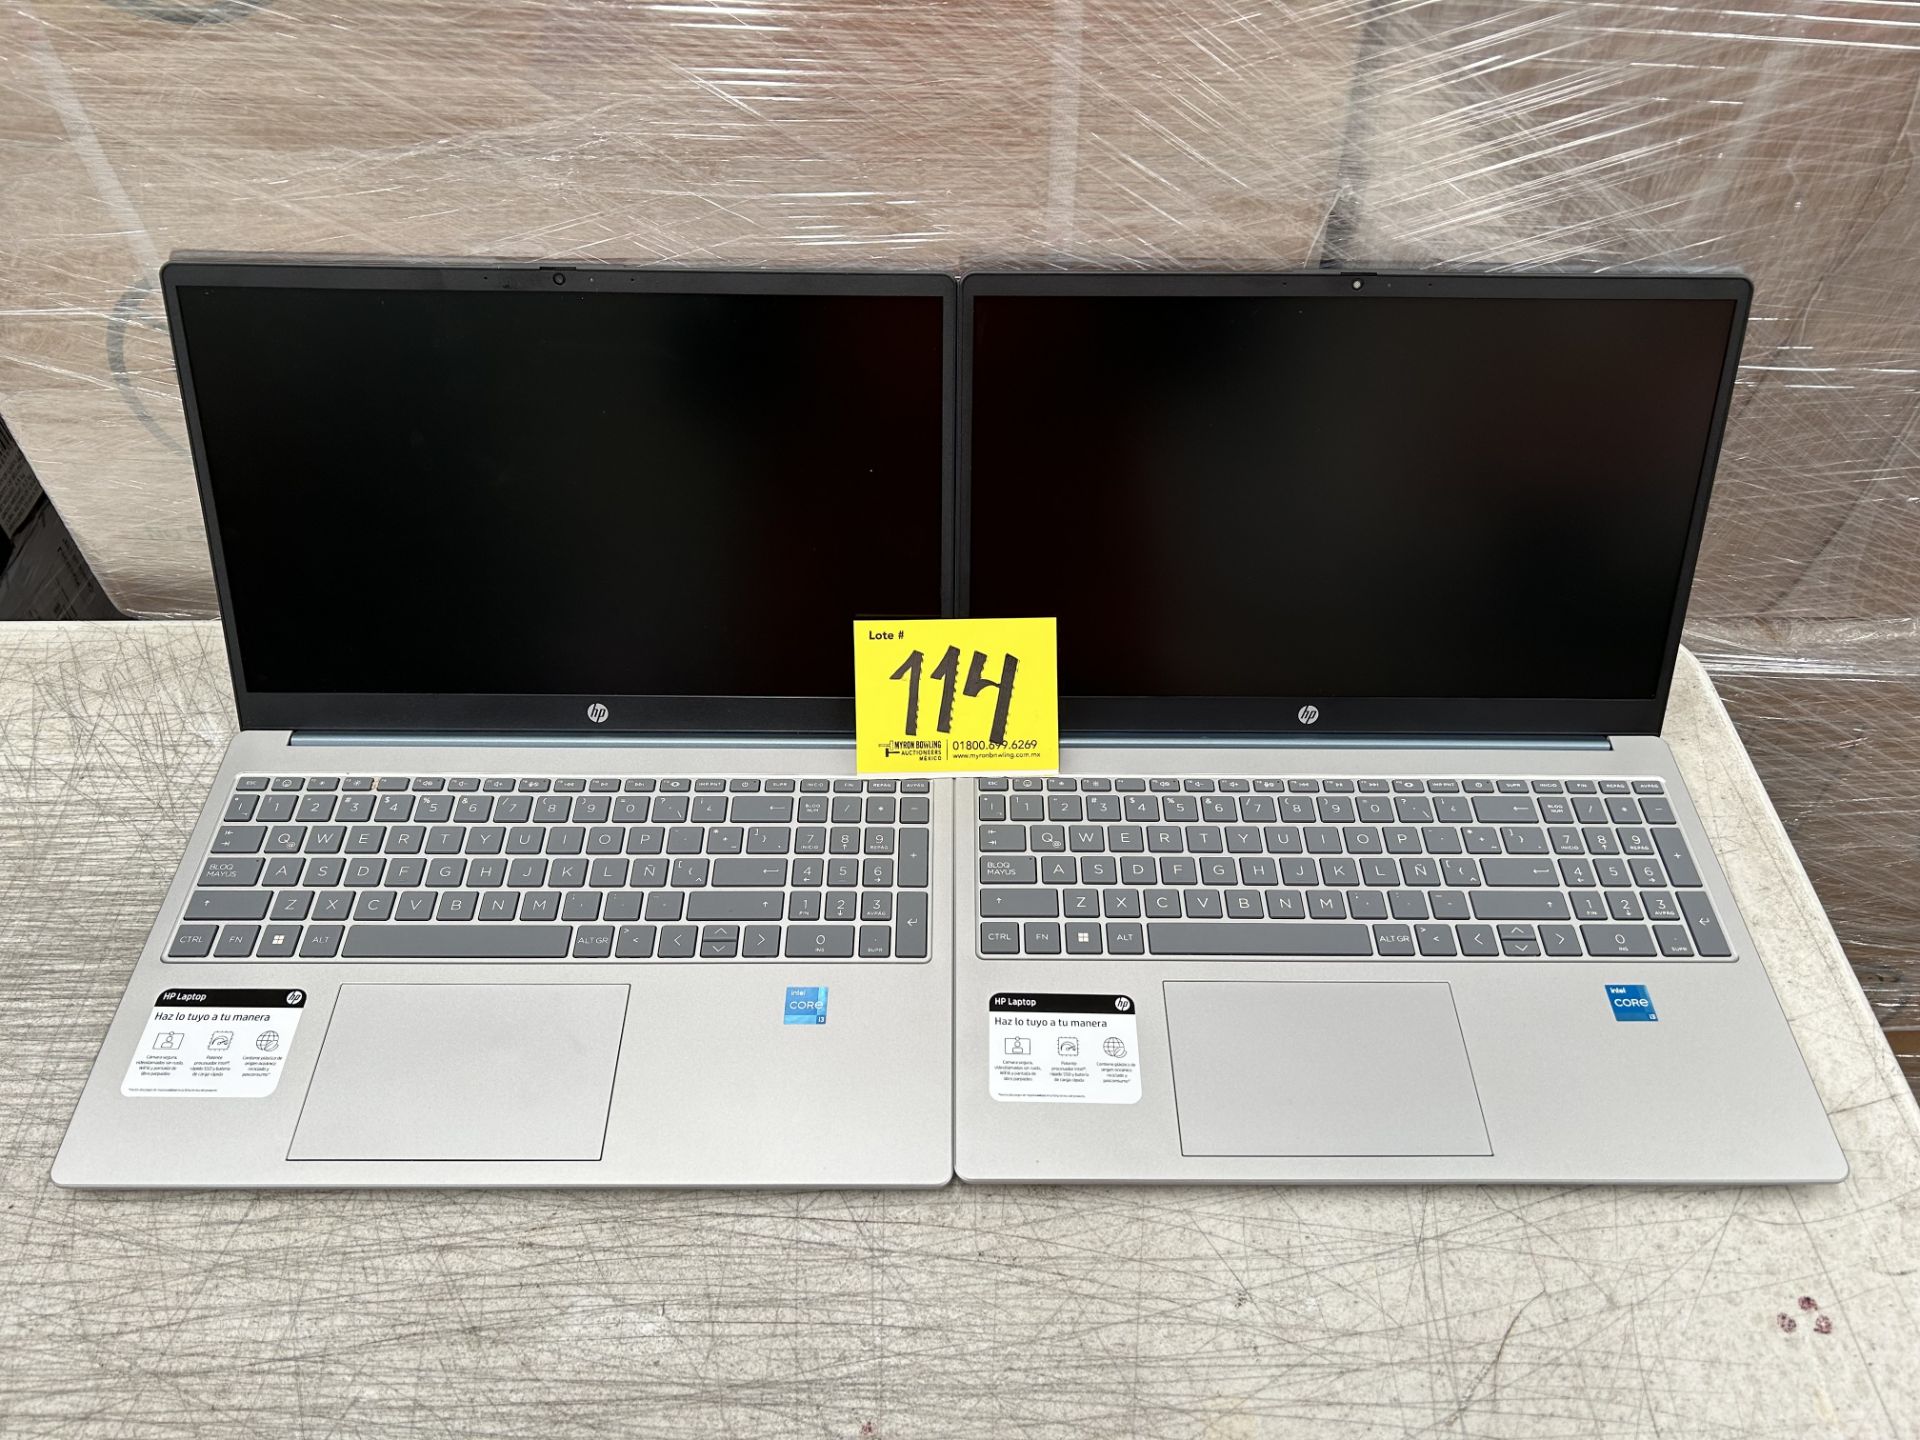 Lote de 2 laptops contiene: 1 laptop Marca HP, Modelo 15FD0000LA, 512 SSD GB de almacenamiento, RAM